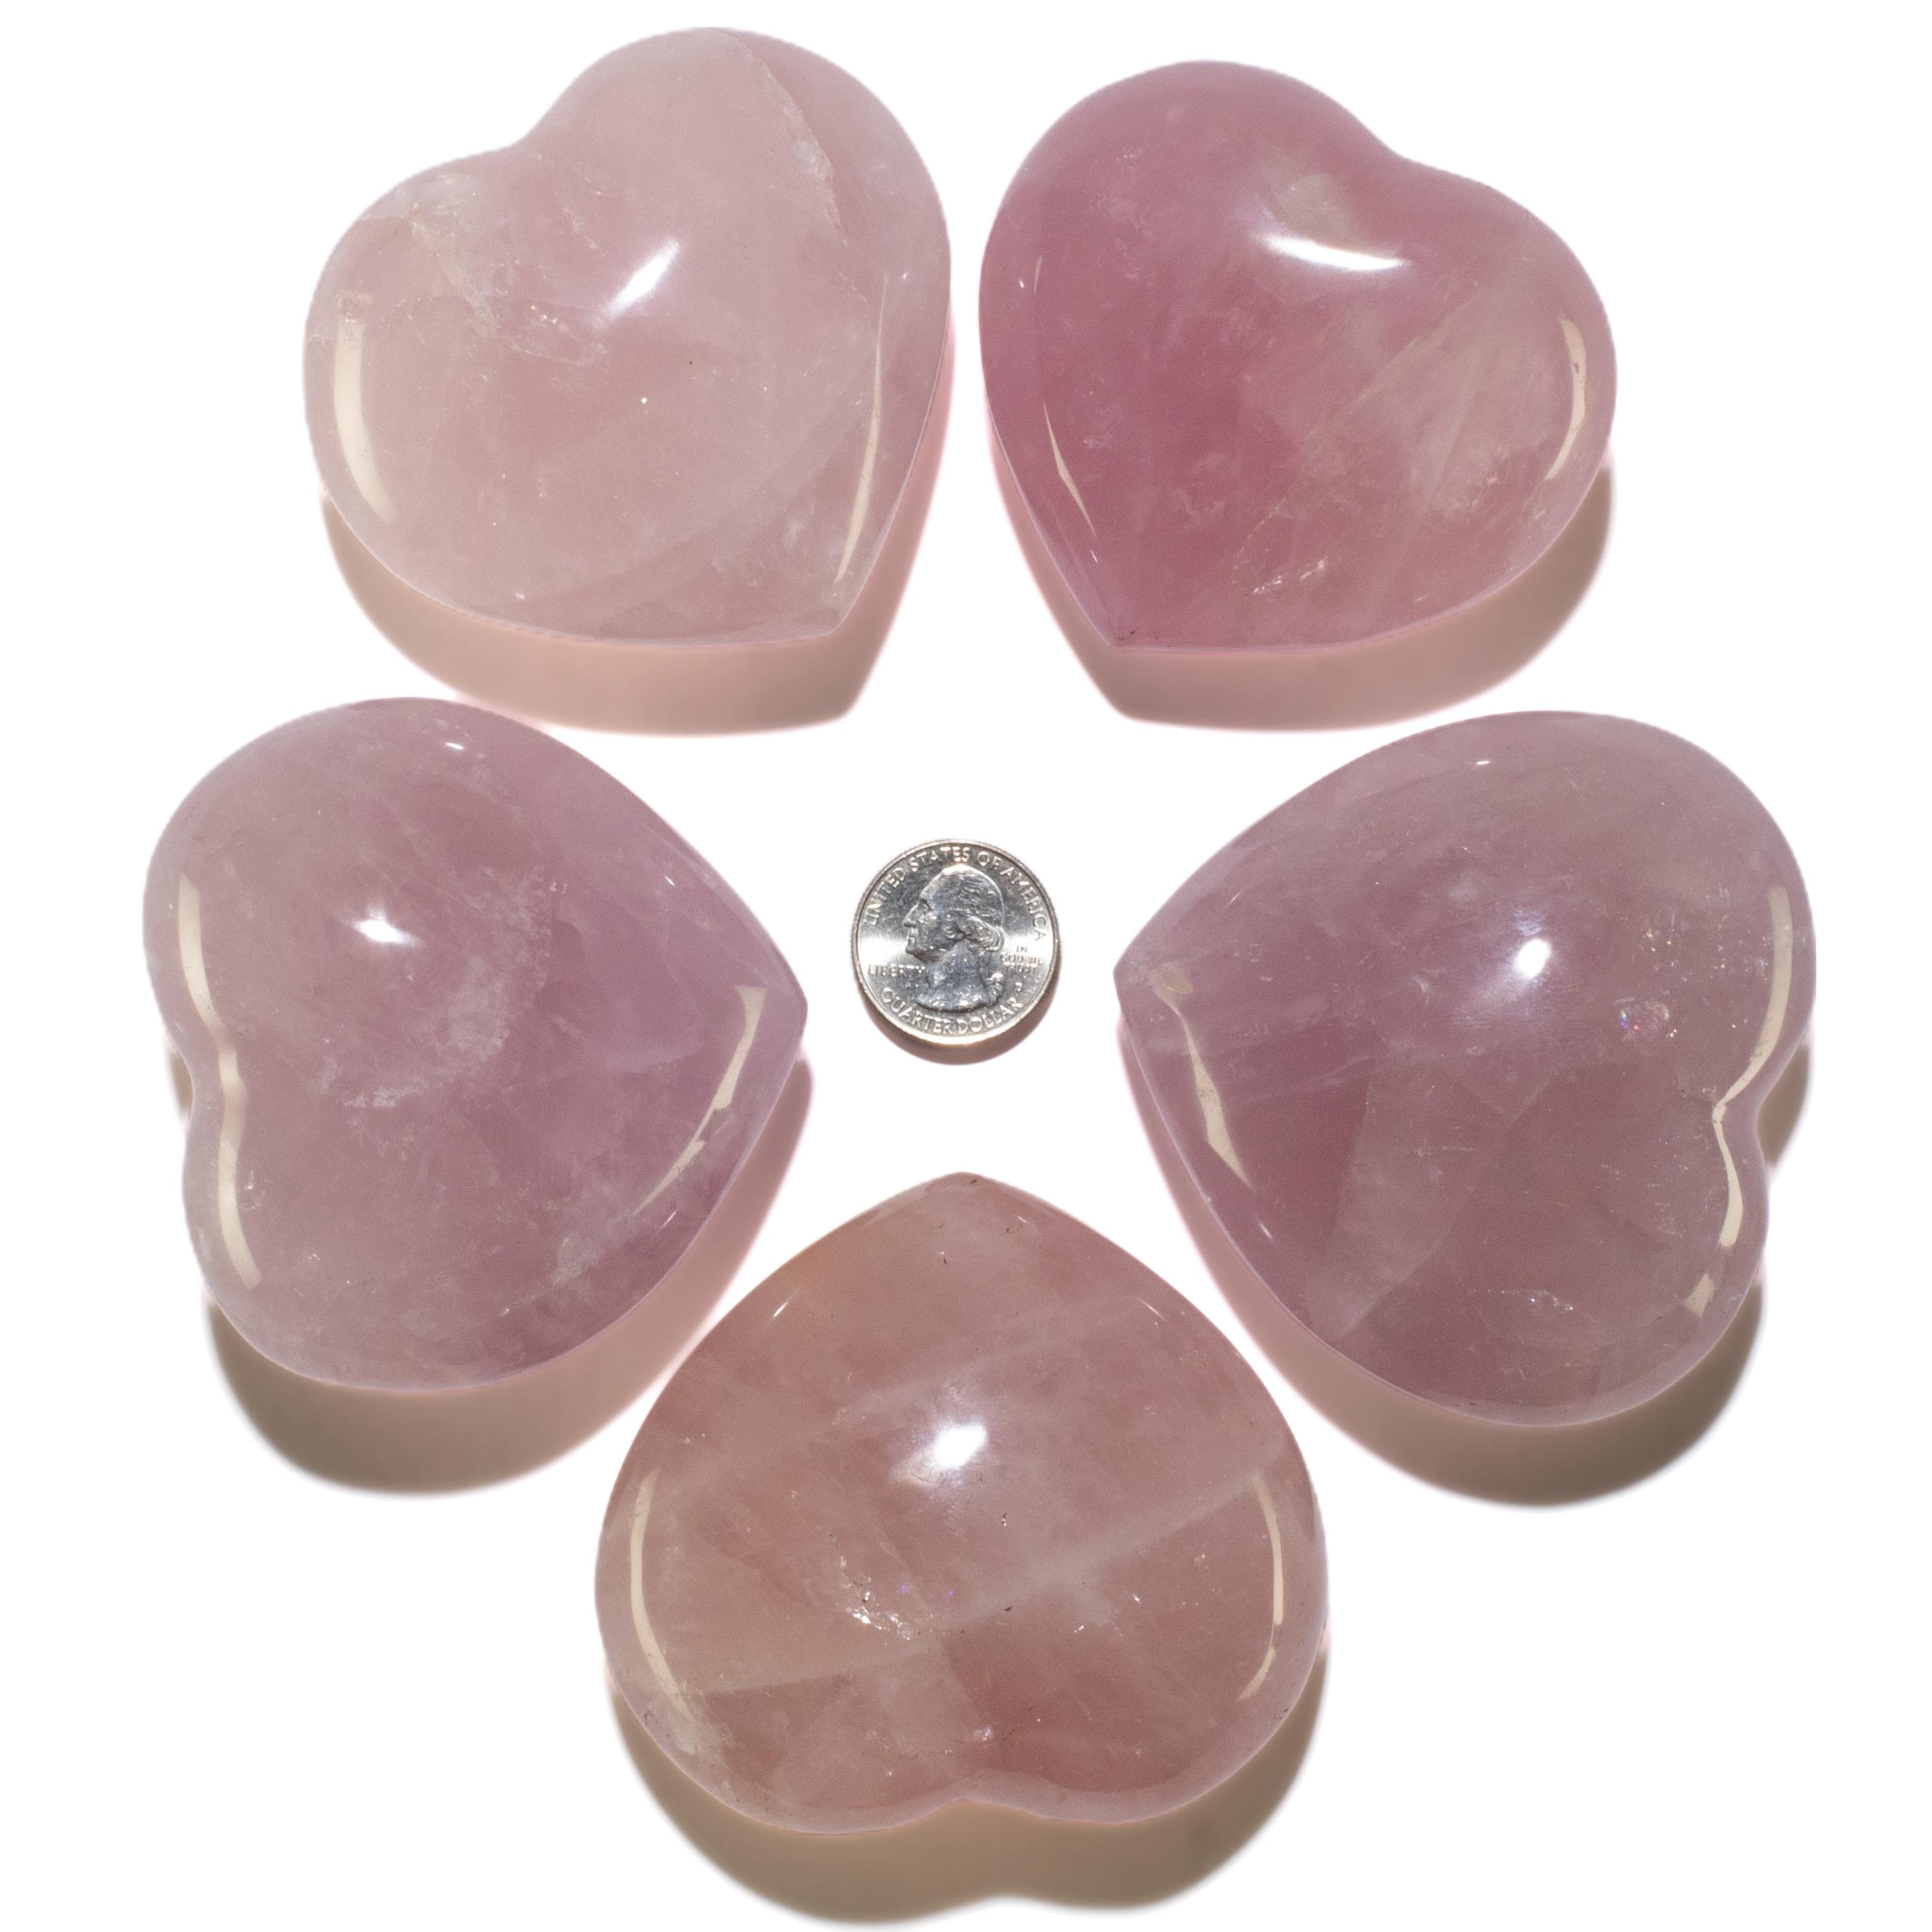 KALIFANO Rose Quartz Rose Quartz Gemstone Heart Carving 300g / 3in. GH240-RQ